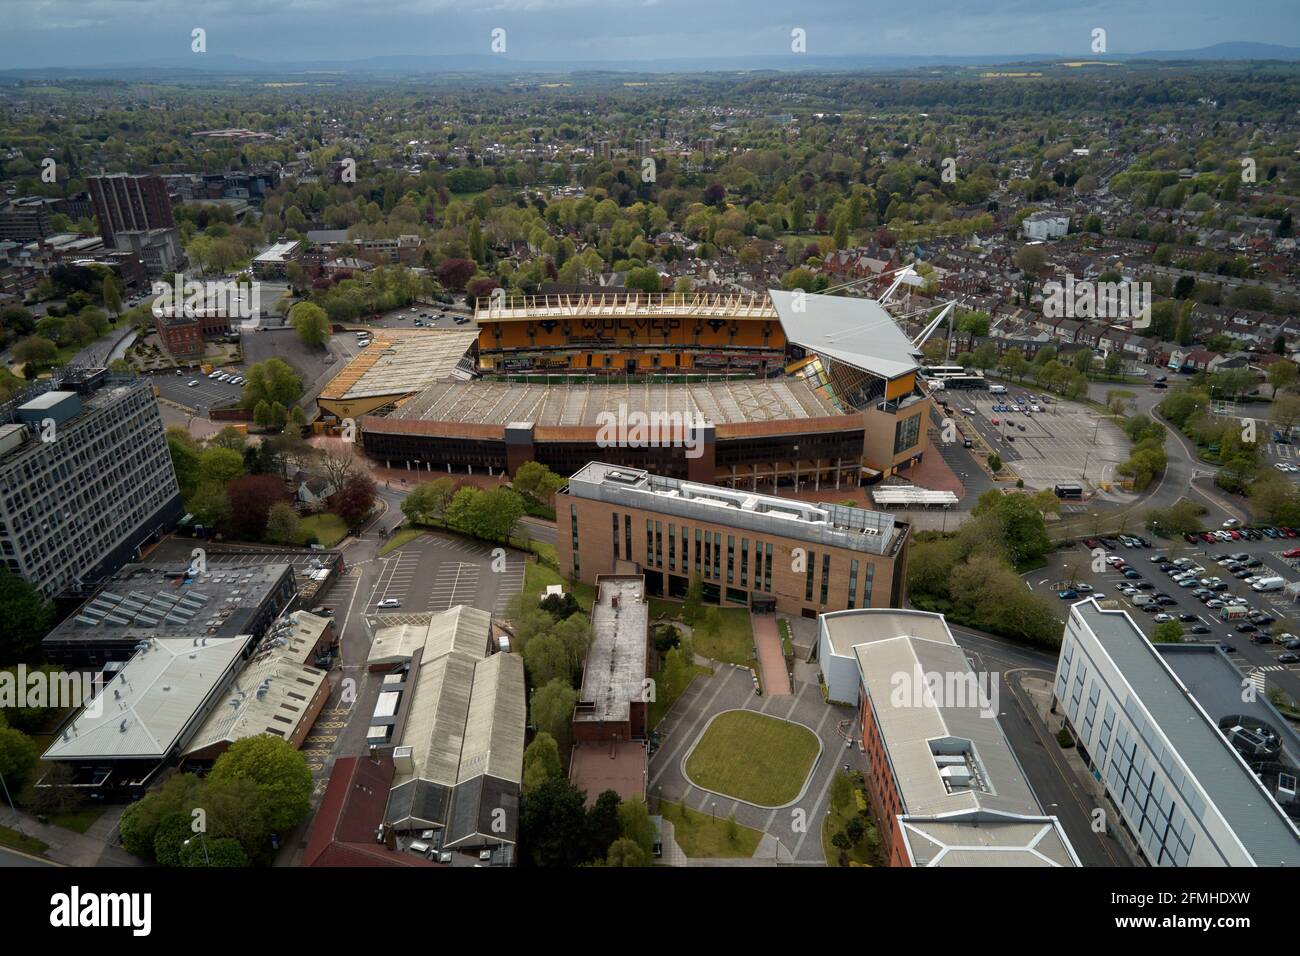 Vista aerea dello stadio Molineux, Wolverhampton, Regno Unito Foto Stock